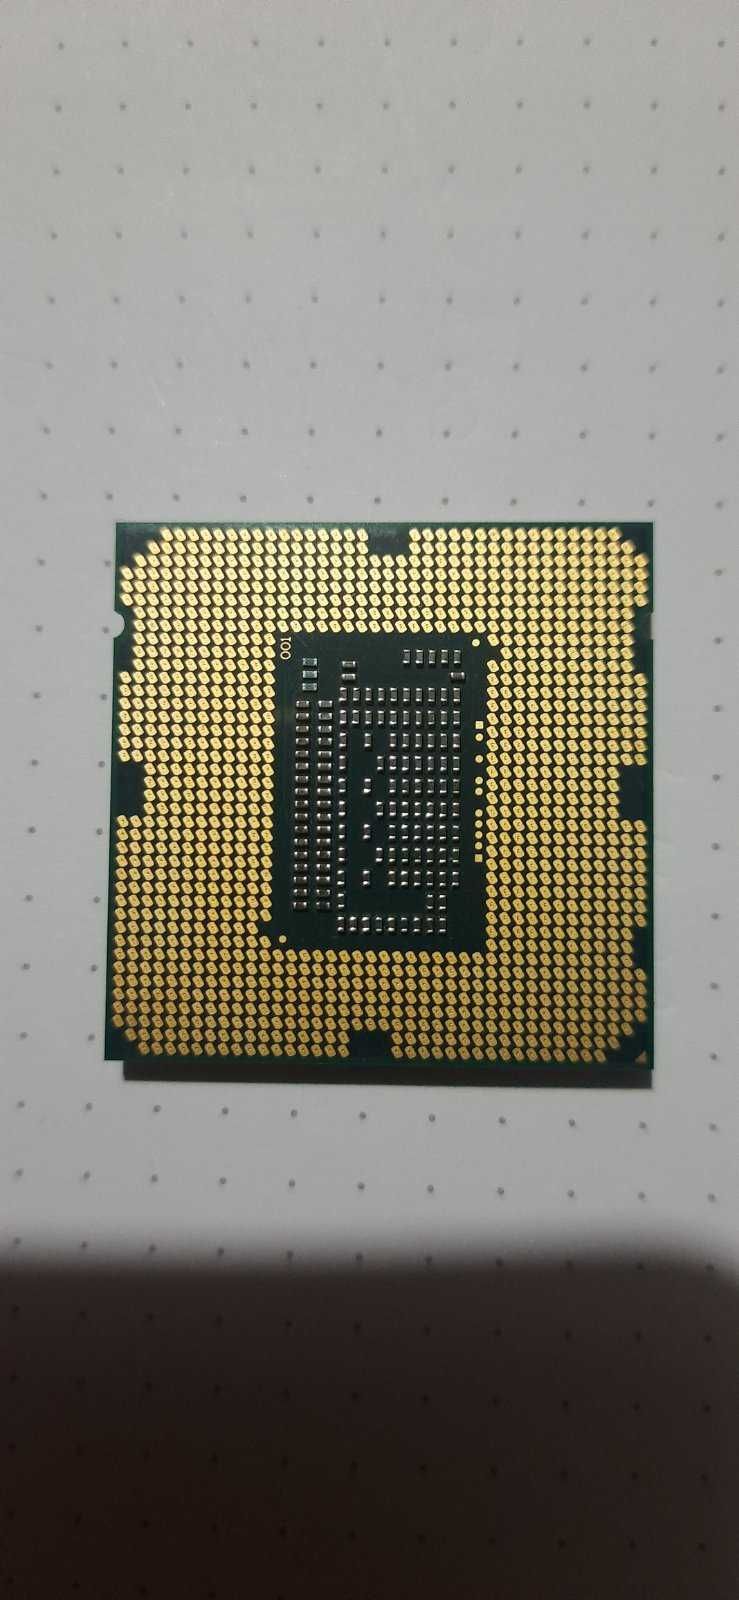 Процессор Intel i5-3470 3.2-3.6GHz/6MB tray 1155 сокет,